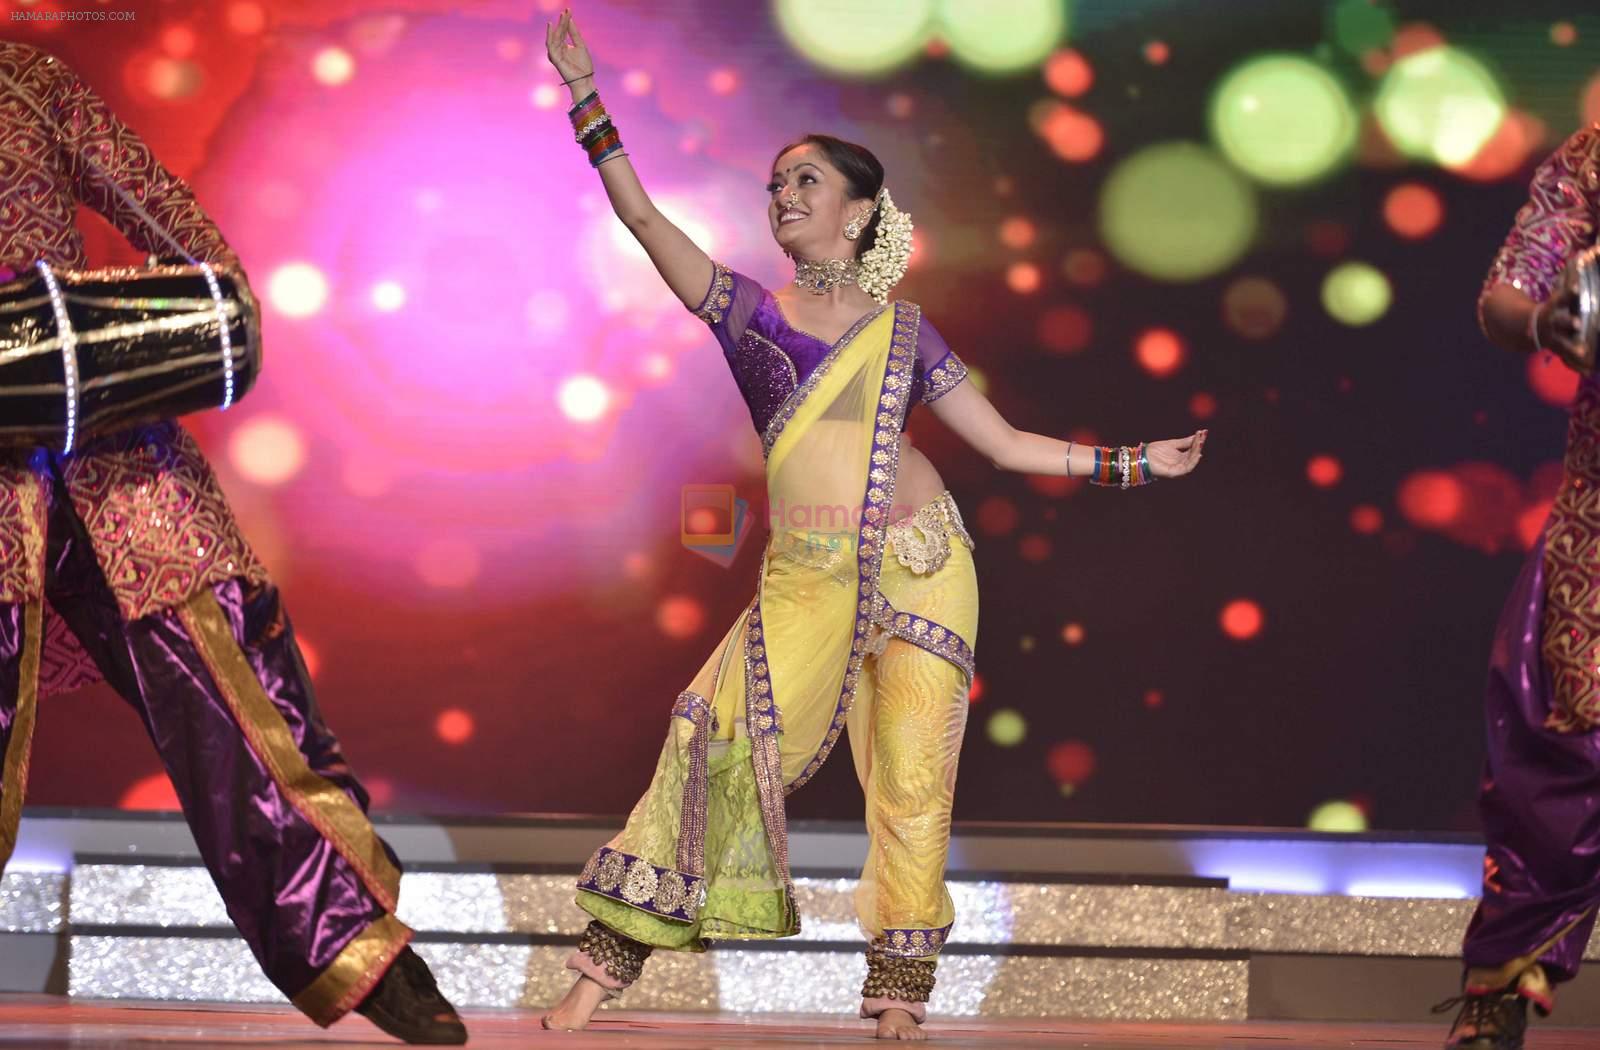 Mansi Naik performs during the Ajeenkya DY Patil Filmfare Awards